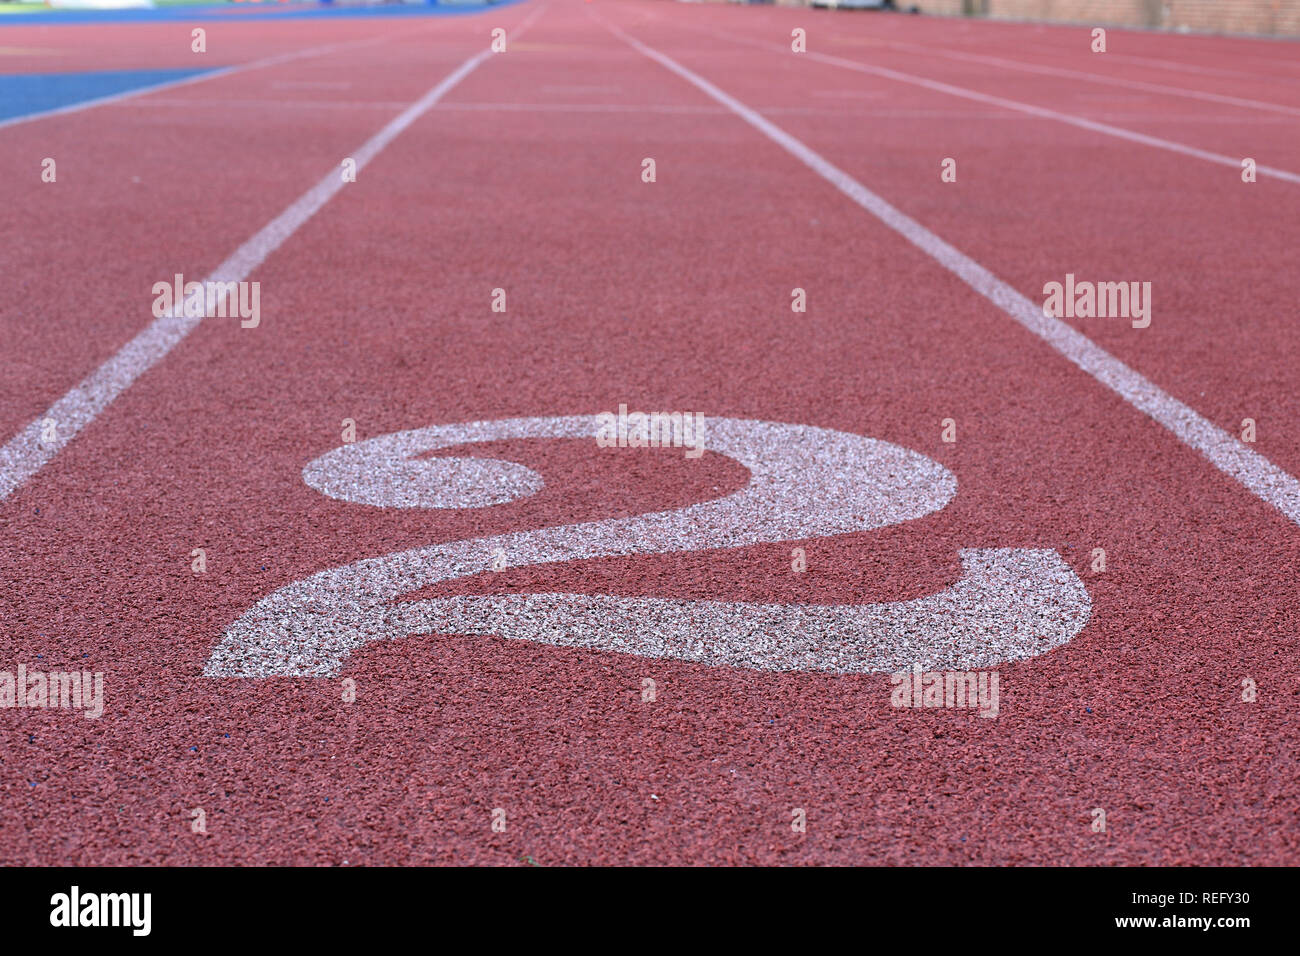 Leichtathletik Race Kurs 2 Stockfoto